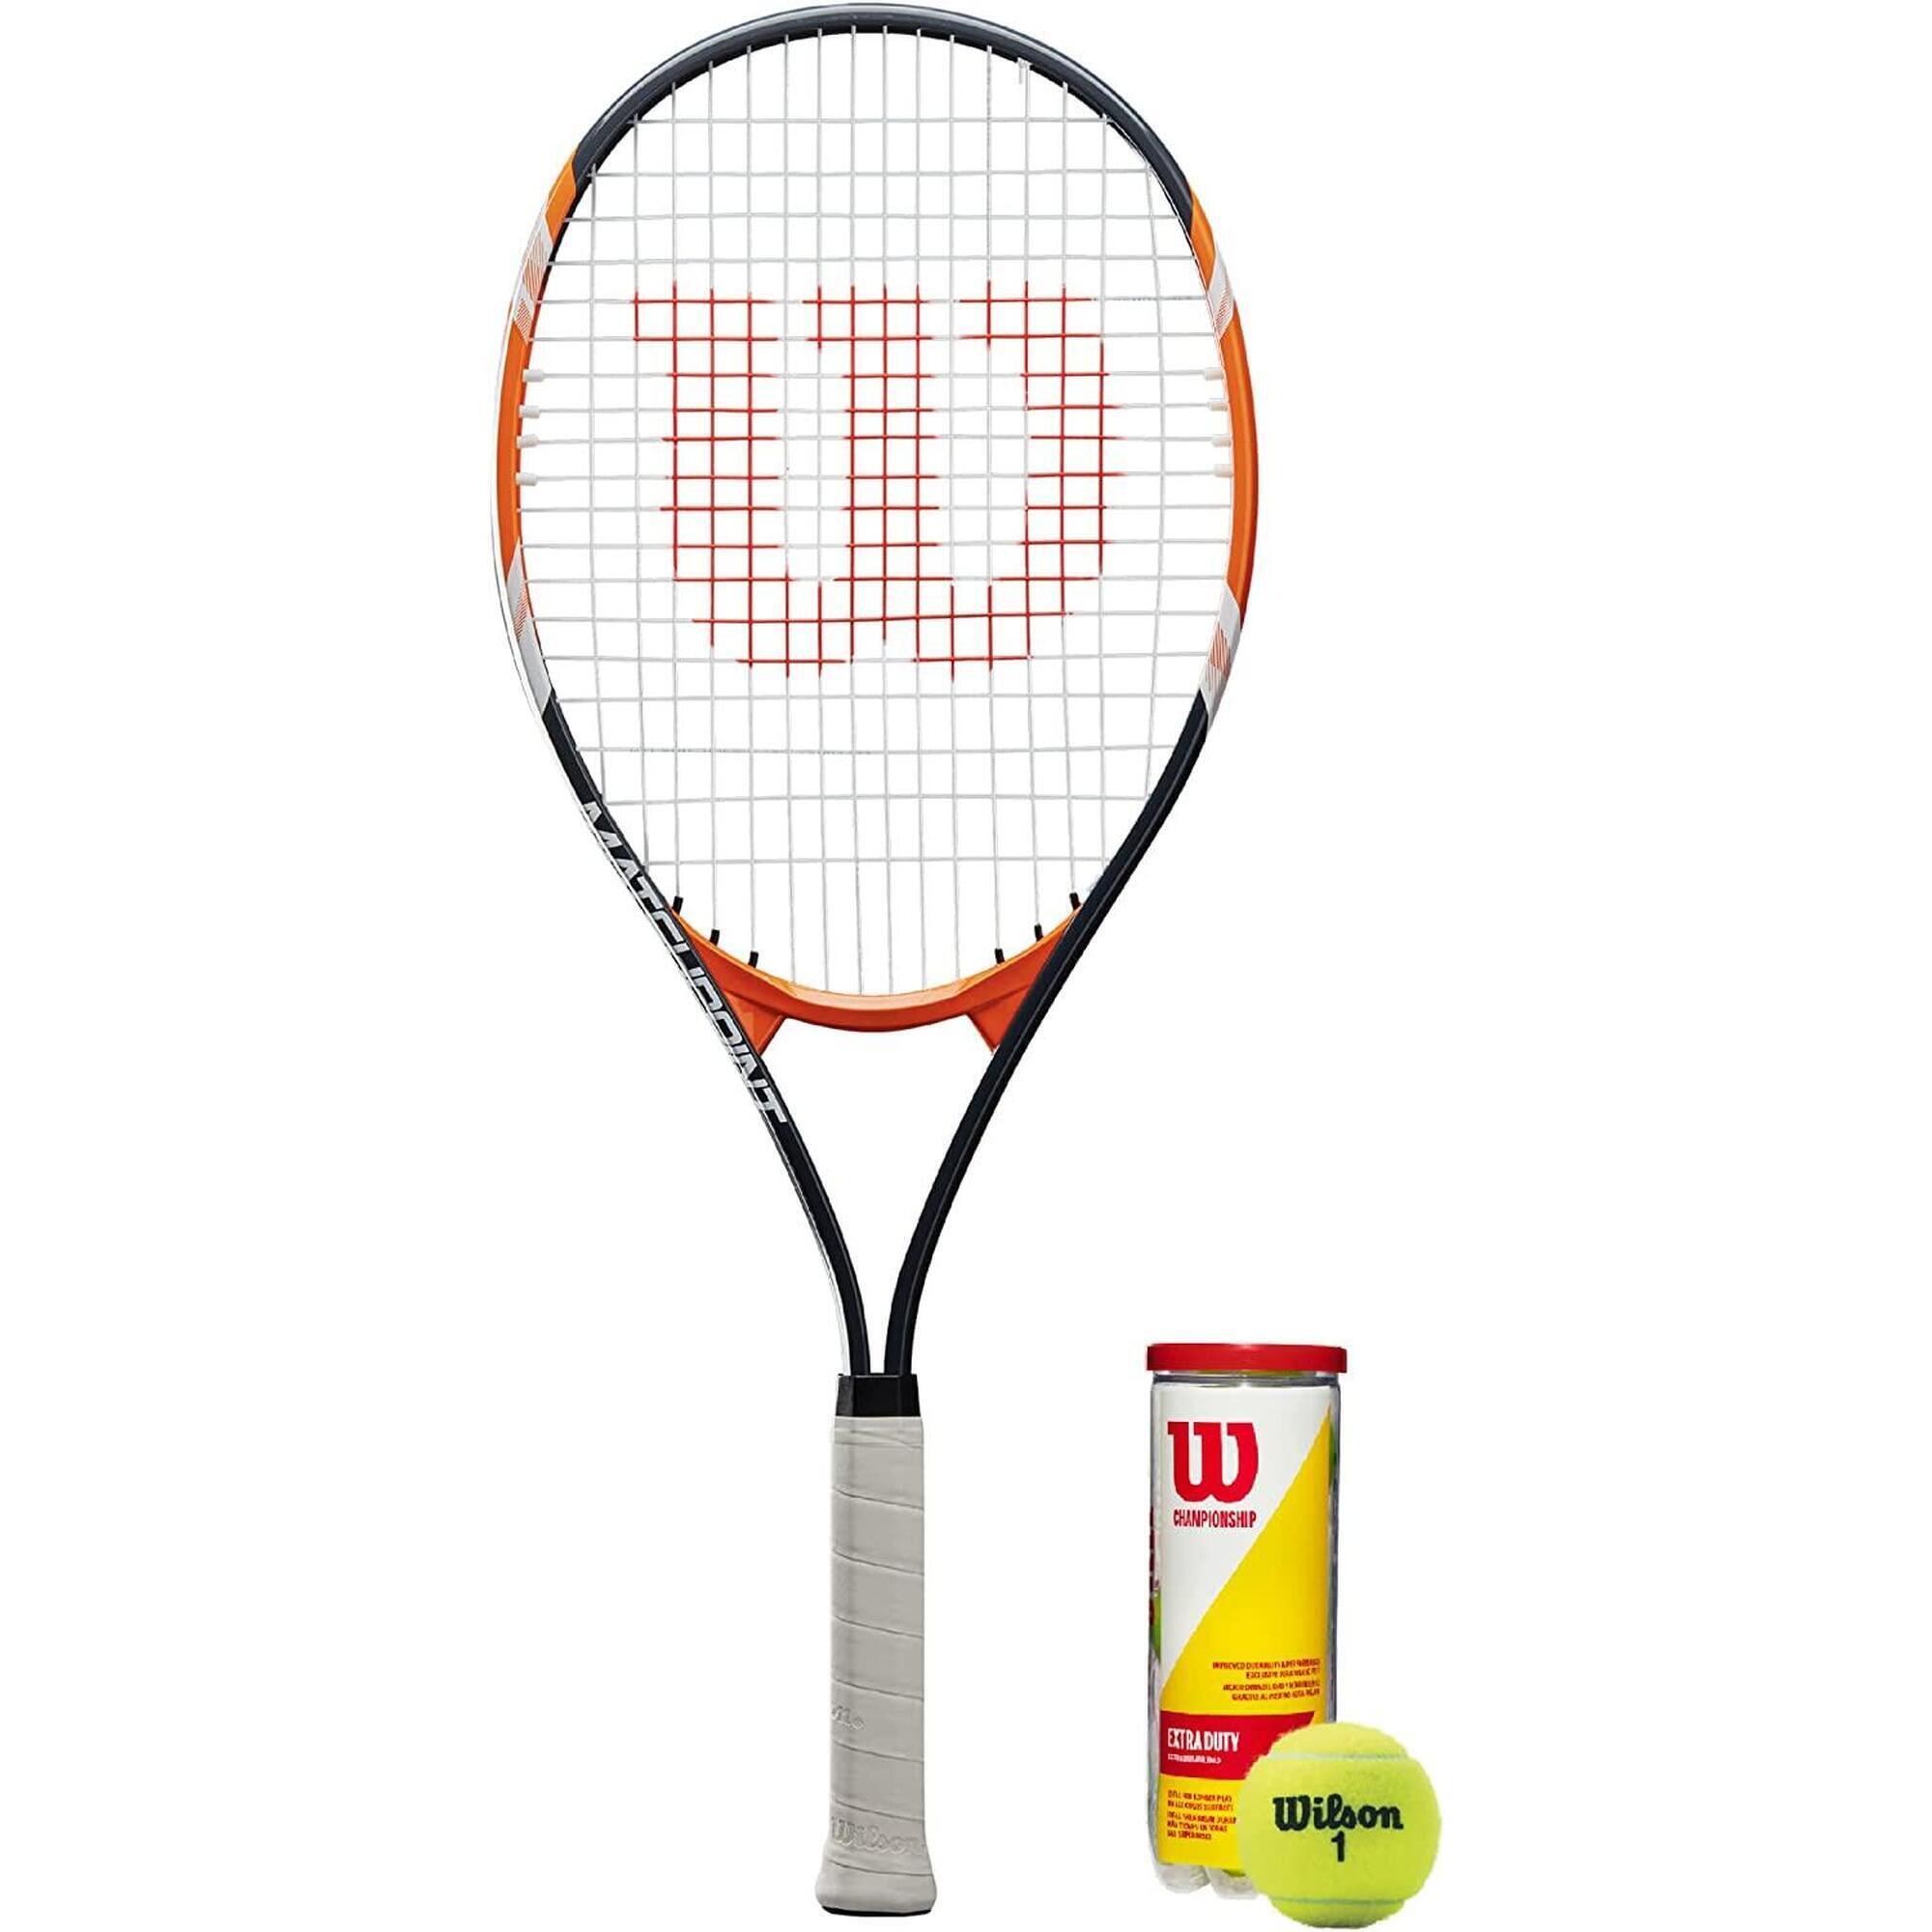 WILSON Wilson Matchpoint XL Tennis Racket + 3 Balls